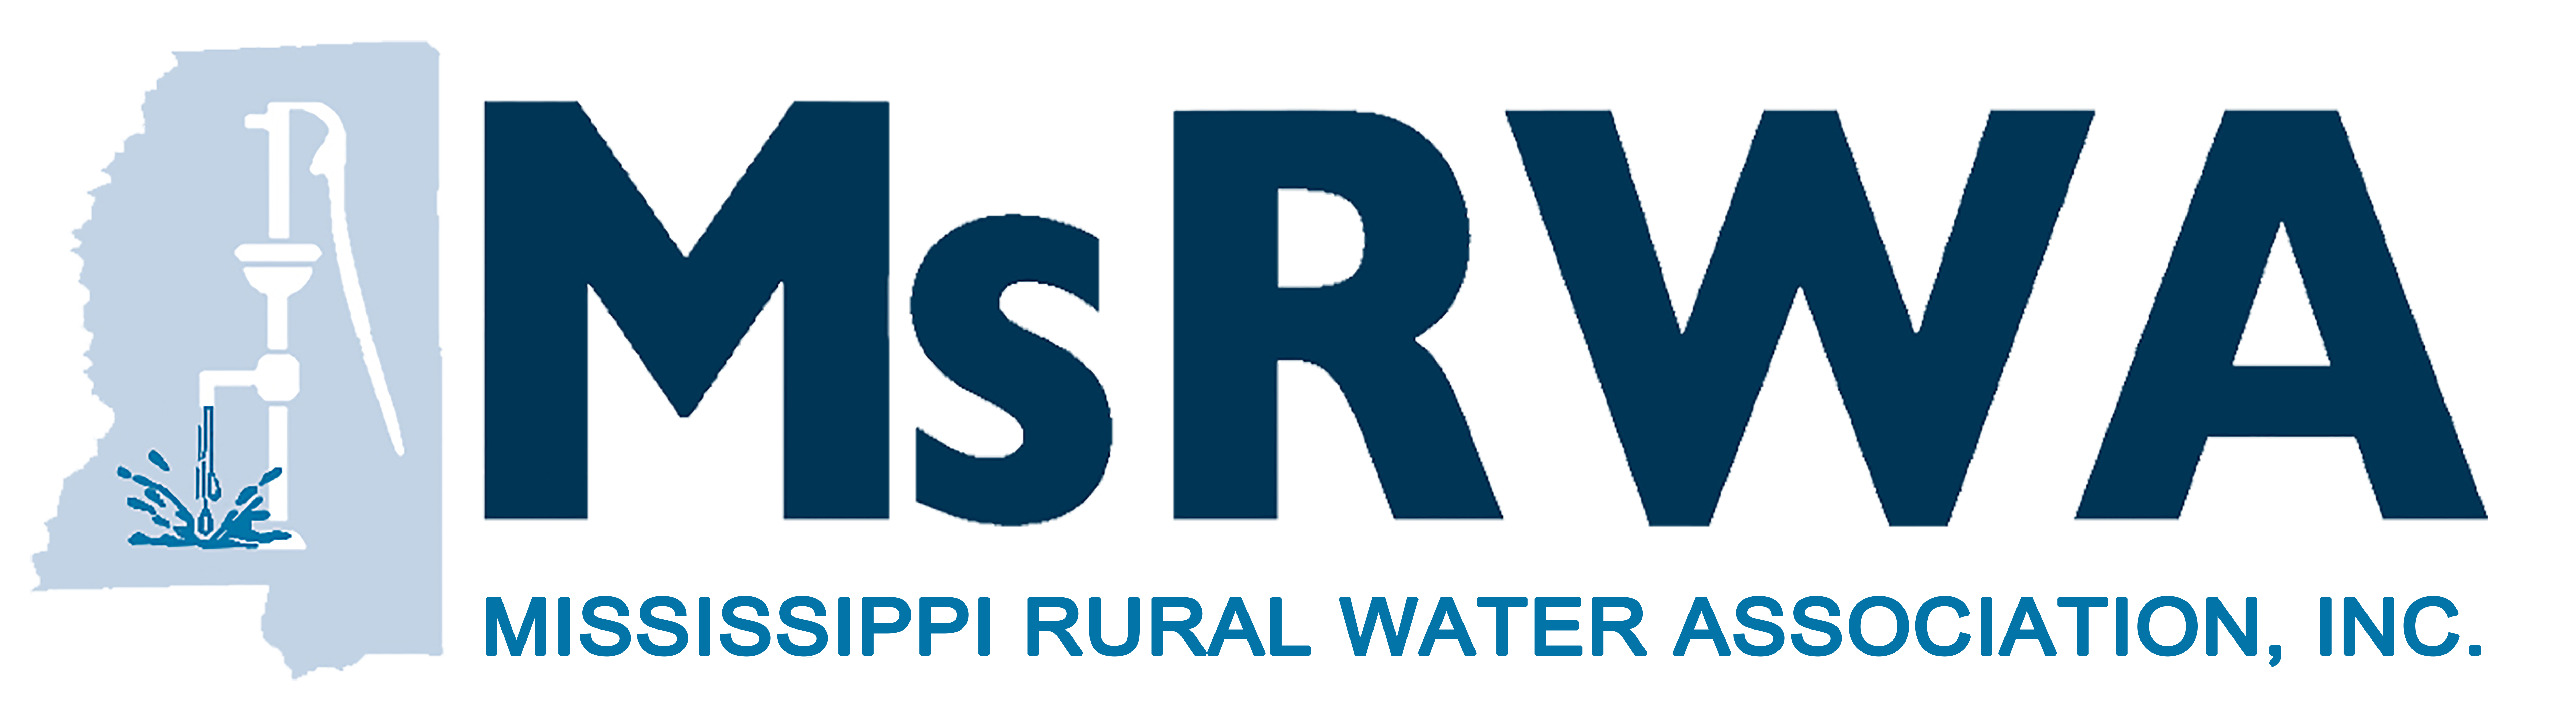 MsRWA | Mississippi Rural Water Association